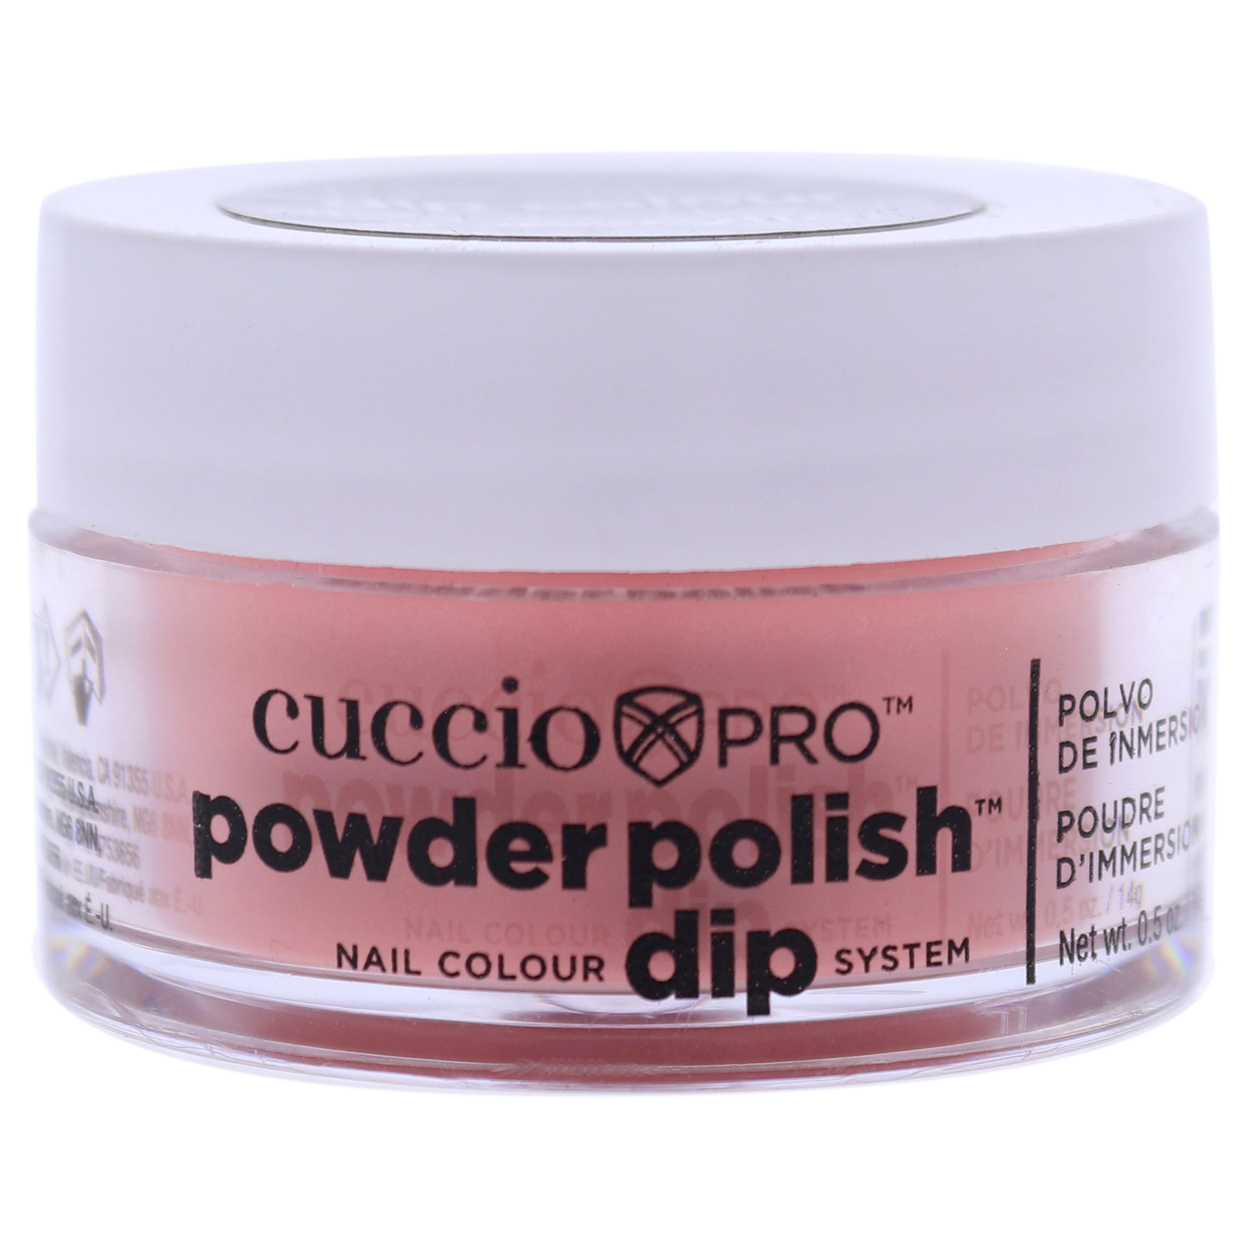 Cuccio Colour Pro Powder Polish Nail Colour Dip System - Peach Nail Powder 0.5 Oz